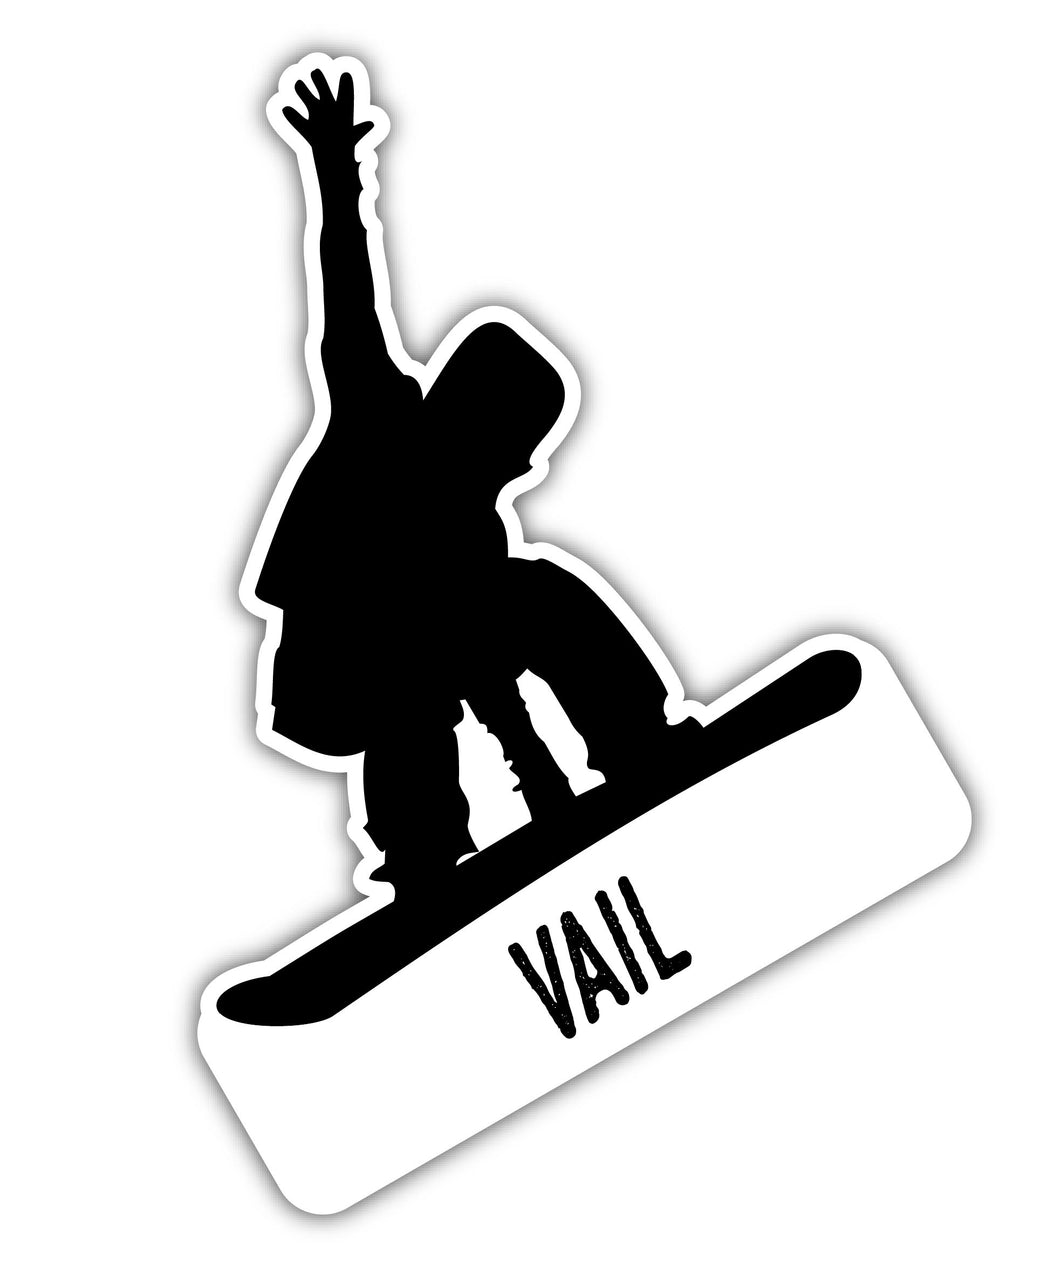 Vail Colorado Ski Adventures Souvenir 4 Inch Vinyl Decal Sticker Board Design